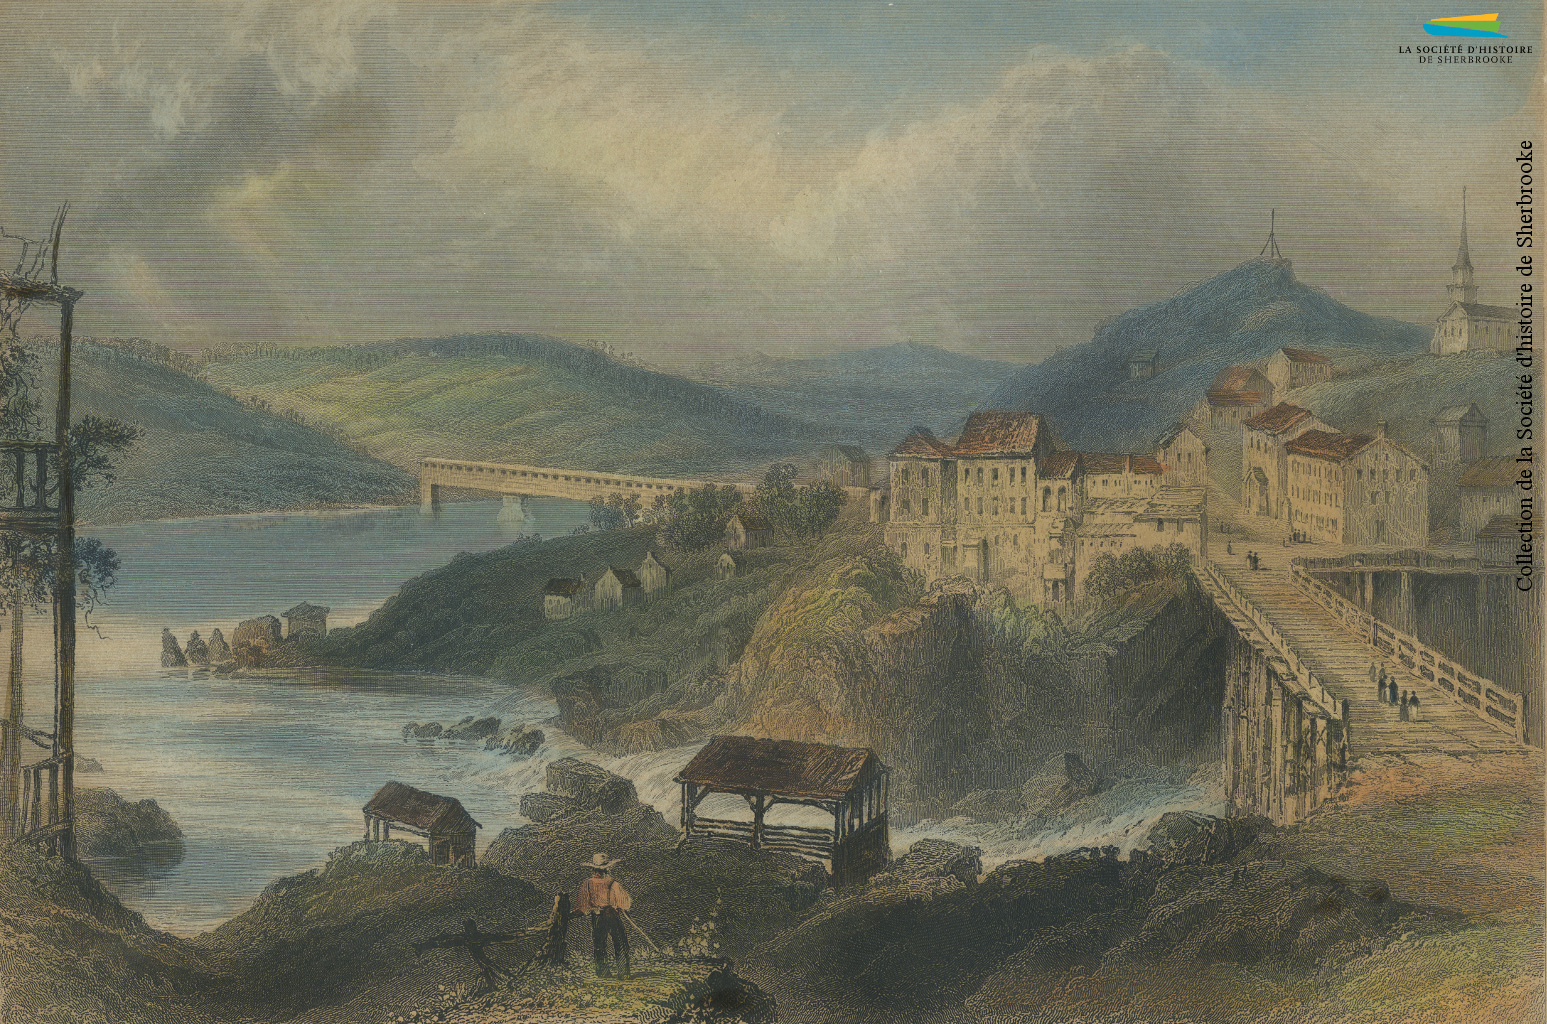 Le pont de la rue Dufferin, vu depuis le confluent des rivières Magog et Saint-François, représenté par W.H. Bartlett vers 1840. Sherbrooke en est au début de son développement industriel, mais attire déjà certains ouvriers d’origine britannique dans ses quelques moulins et fabriques.